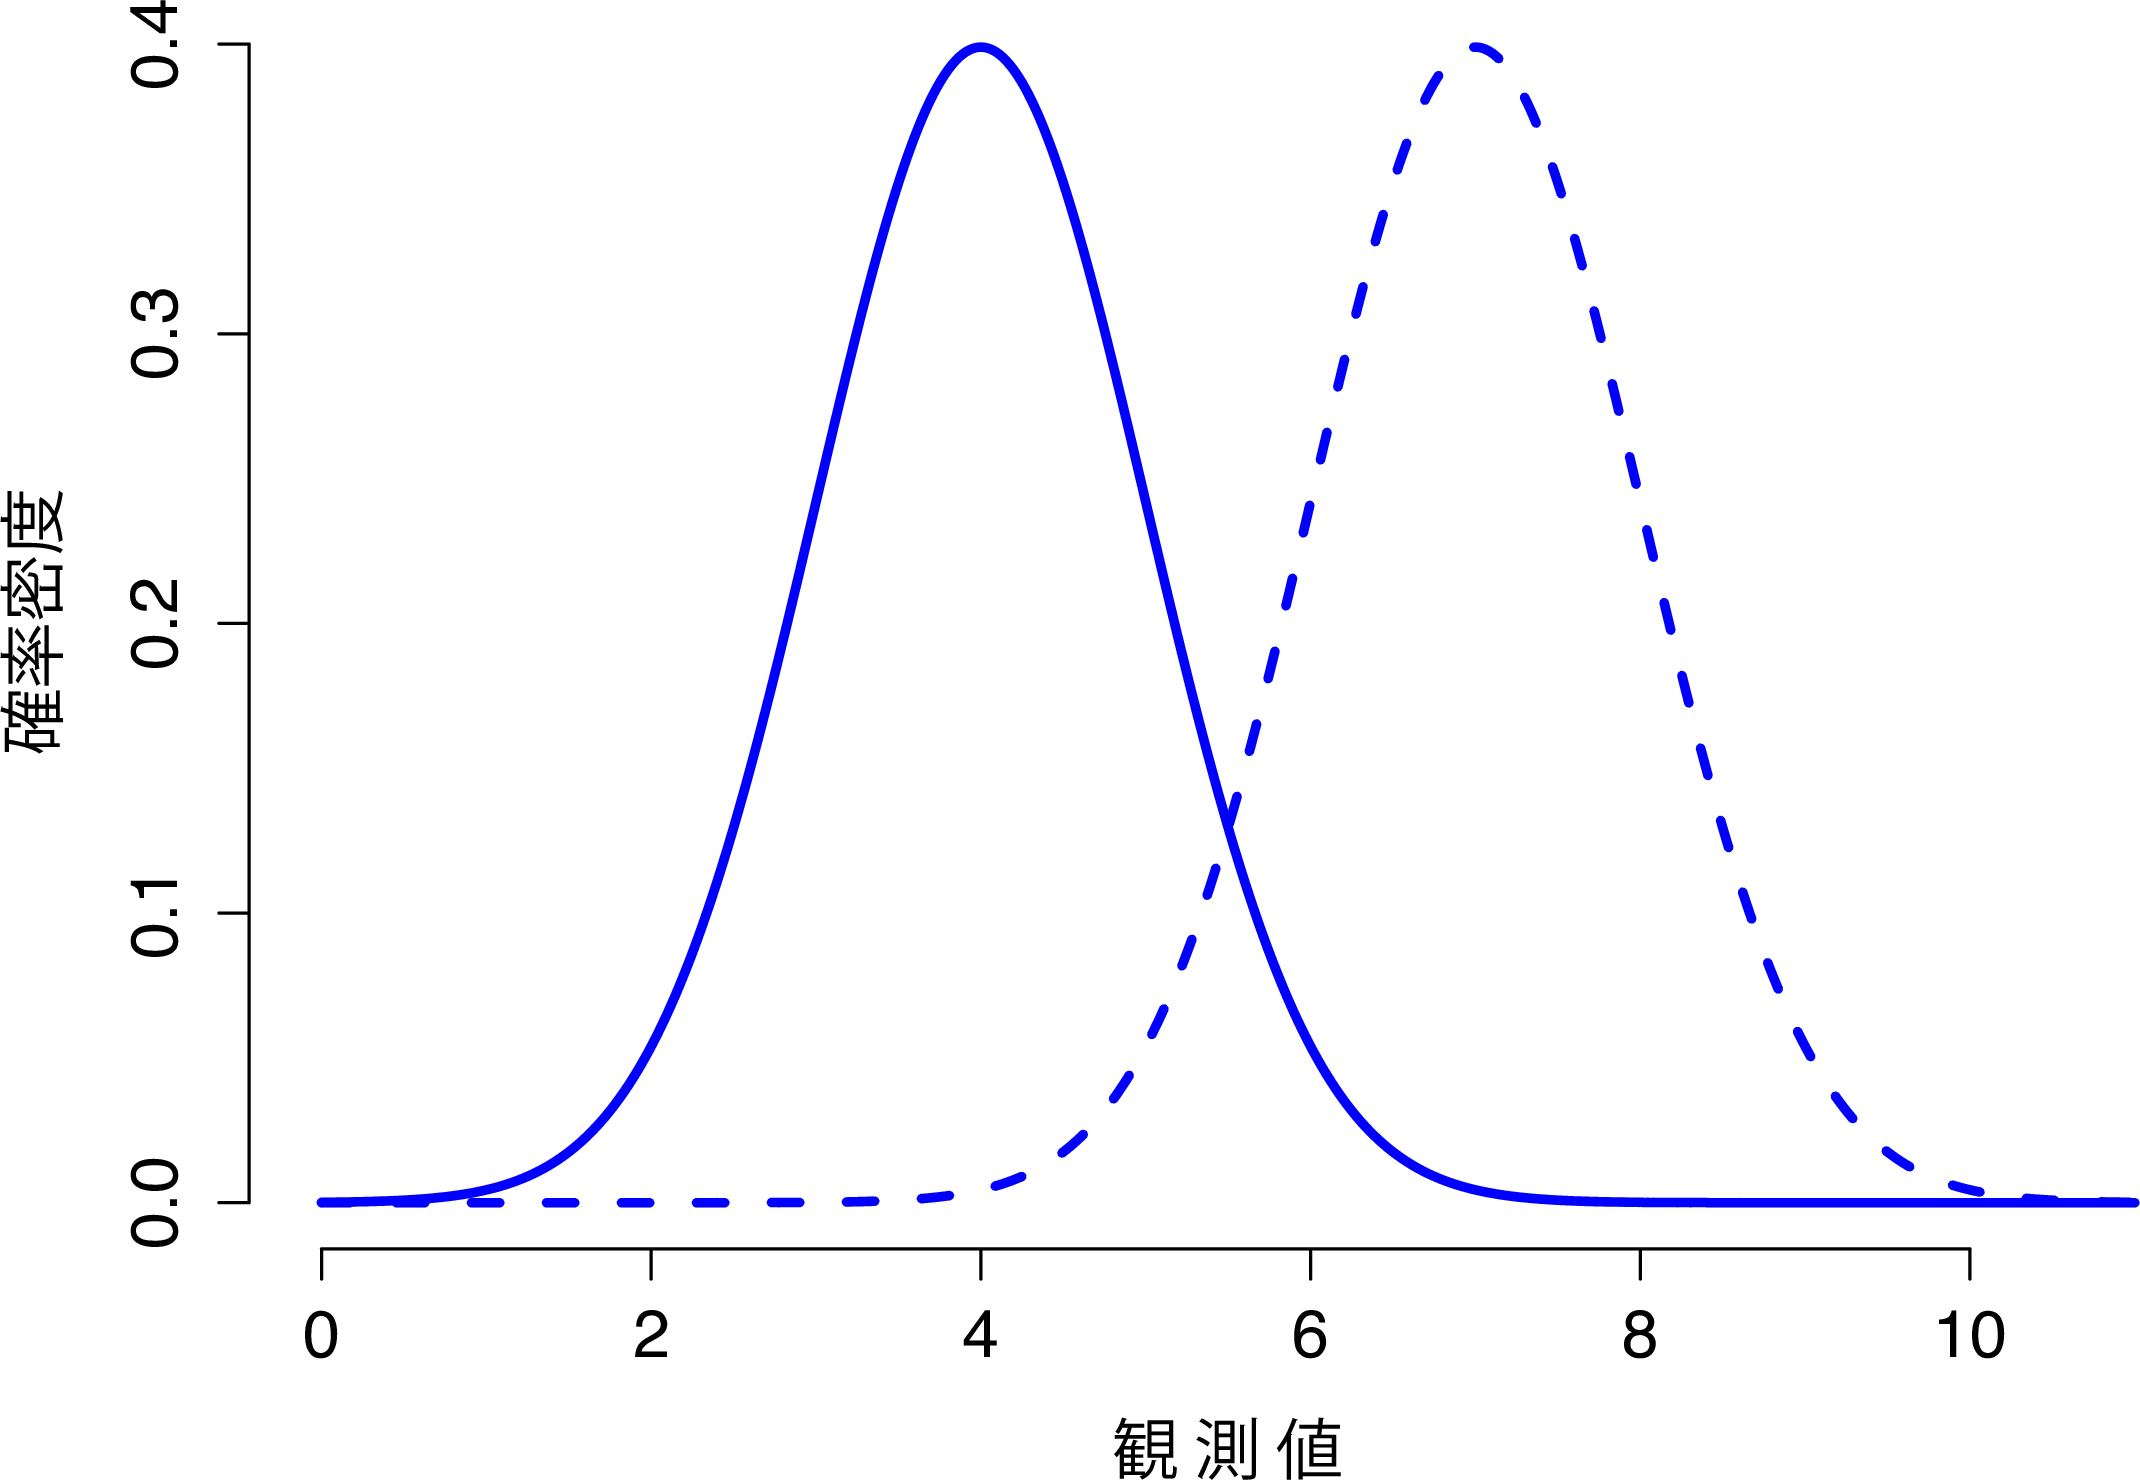 正規分布の平均値を変化させたときの様子。実線は平均値\(\mu=4\)の正規分布で破線は平均値\(\mu=7\)の正規分布。どちらの場合も標準偏差は\(\sigma=1\)。2つの分布は同じ形状であるが，当然のことながら破線直線よりも右側に移動する。